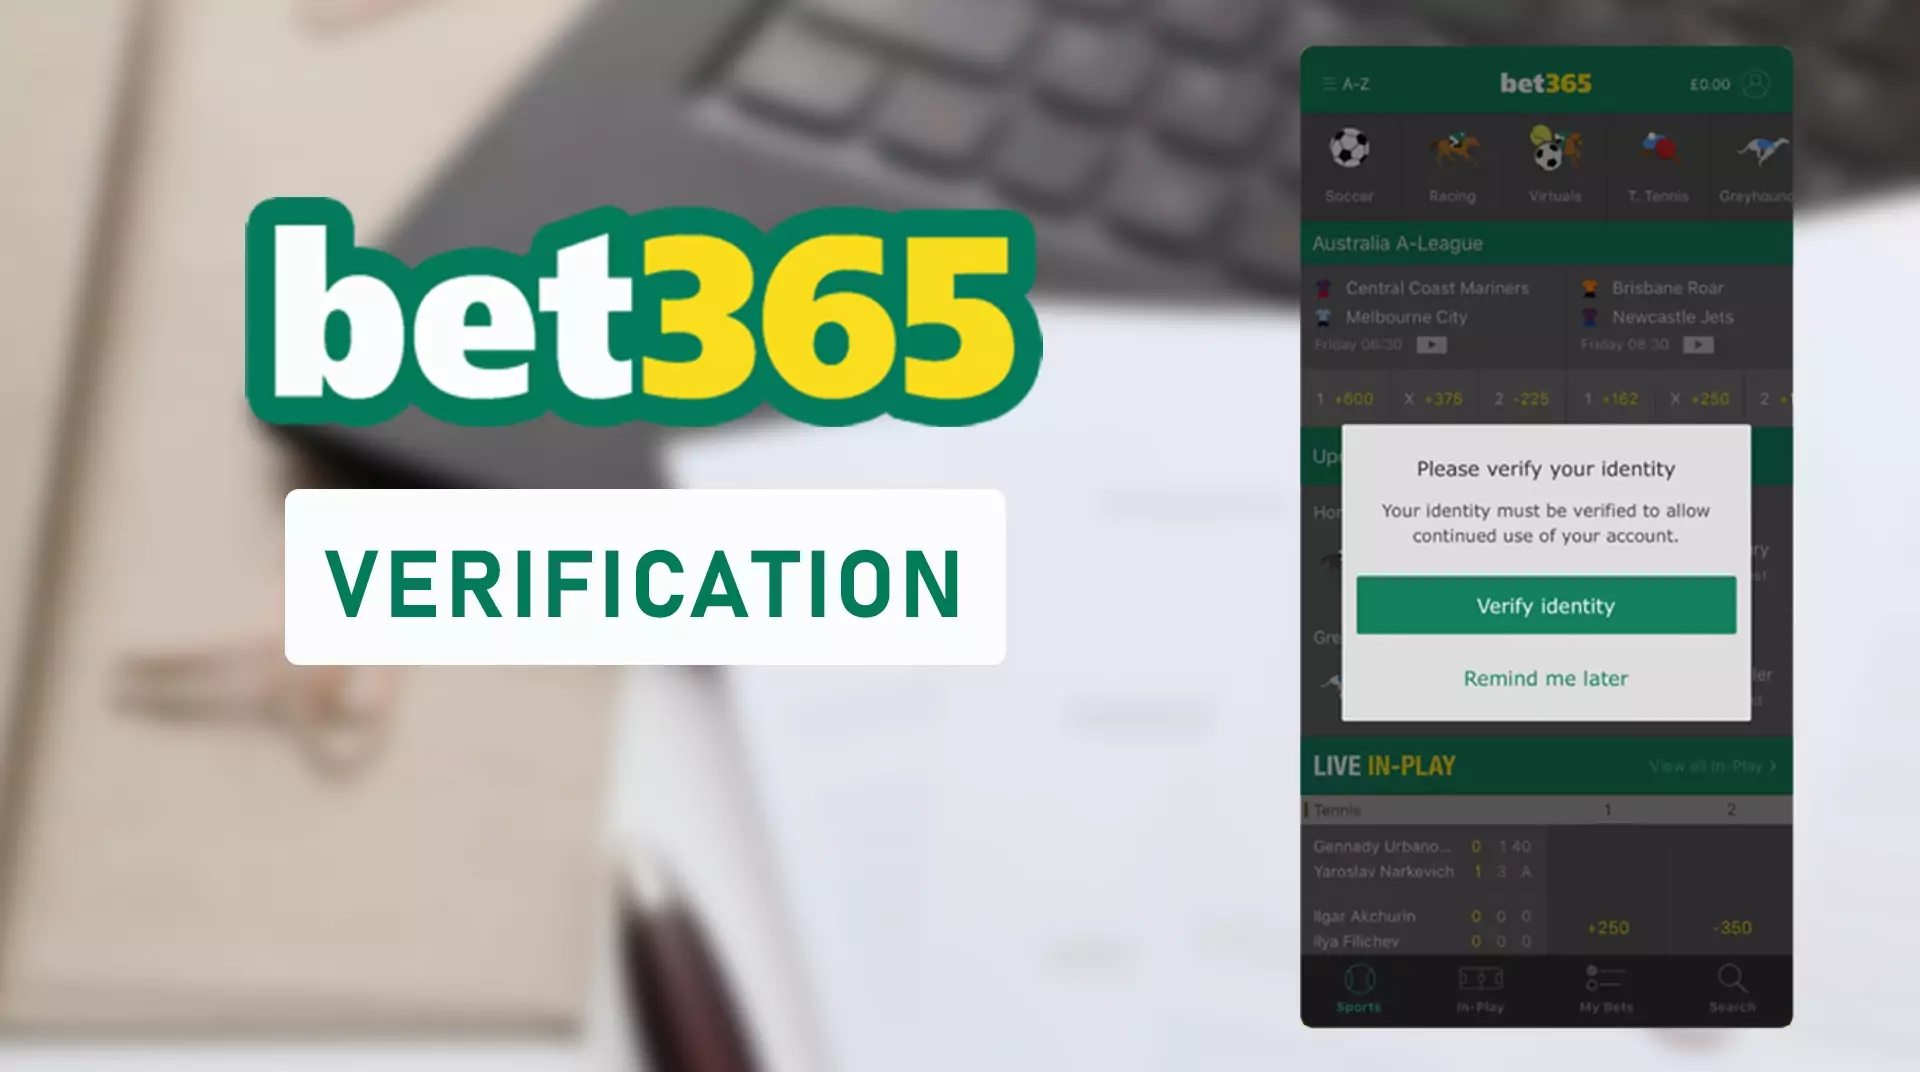 Bet365 के बेटिंग खाते को सत्यापित करें ताकि इसका उपयोग जारी रखा जा सके।